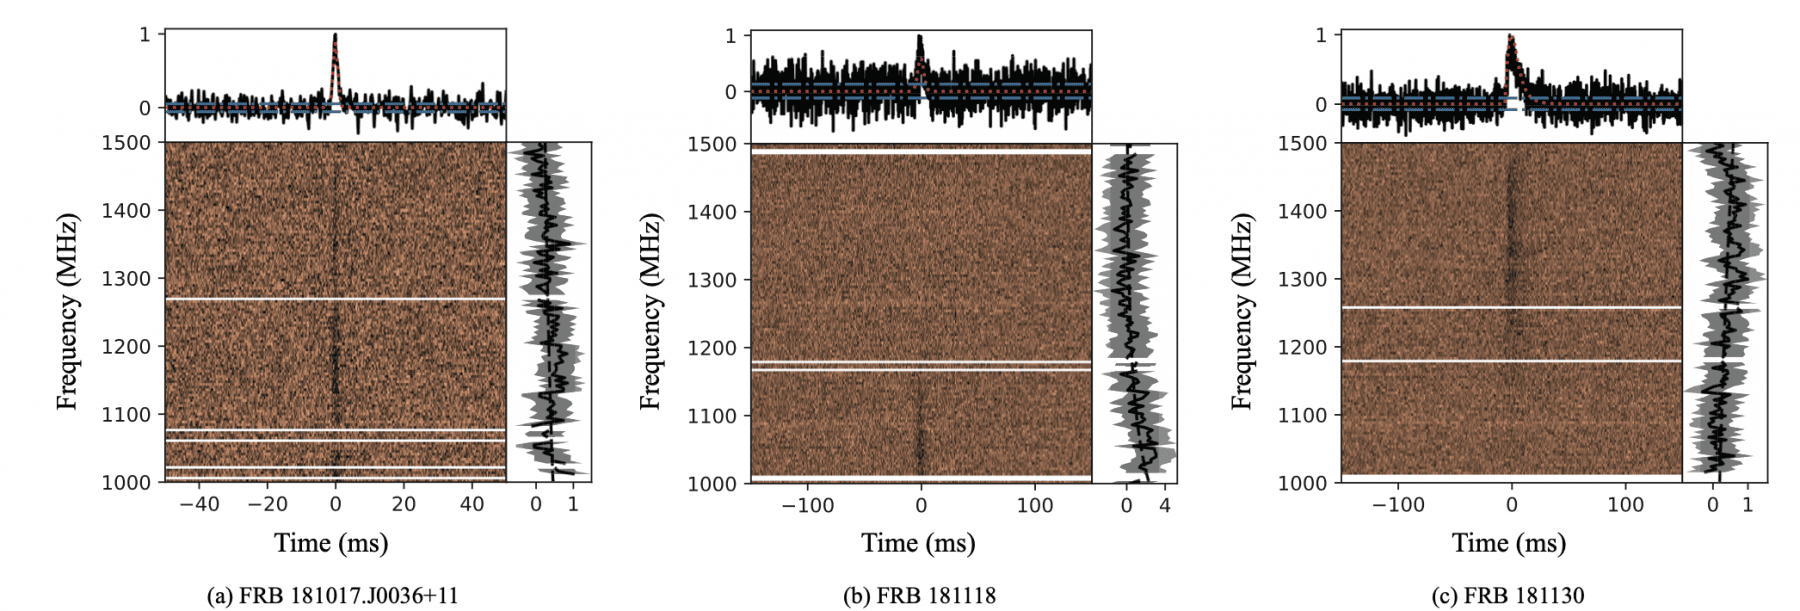 Двумерный динамический спектр трех быстрых радиовсплесков, перехваченных в 2018 г. Фото: NIU Chenhui et al.